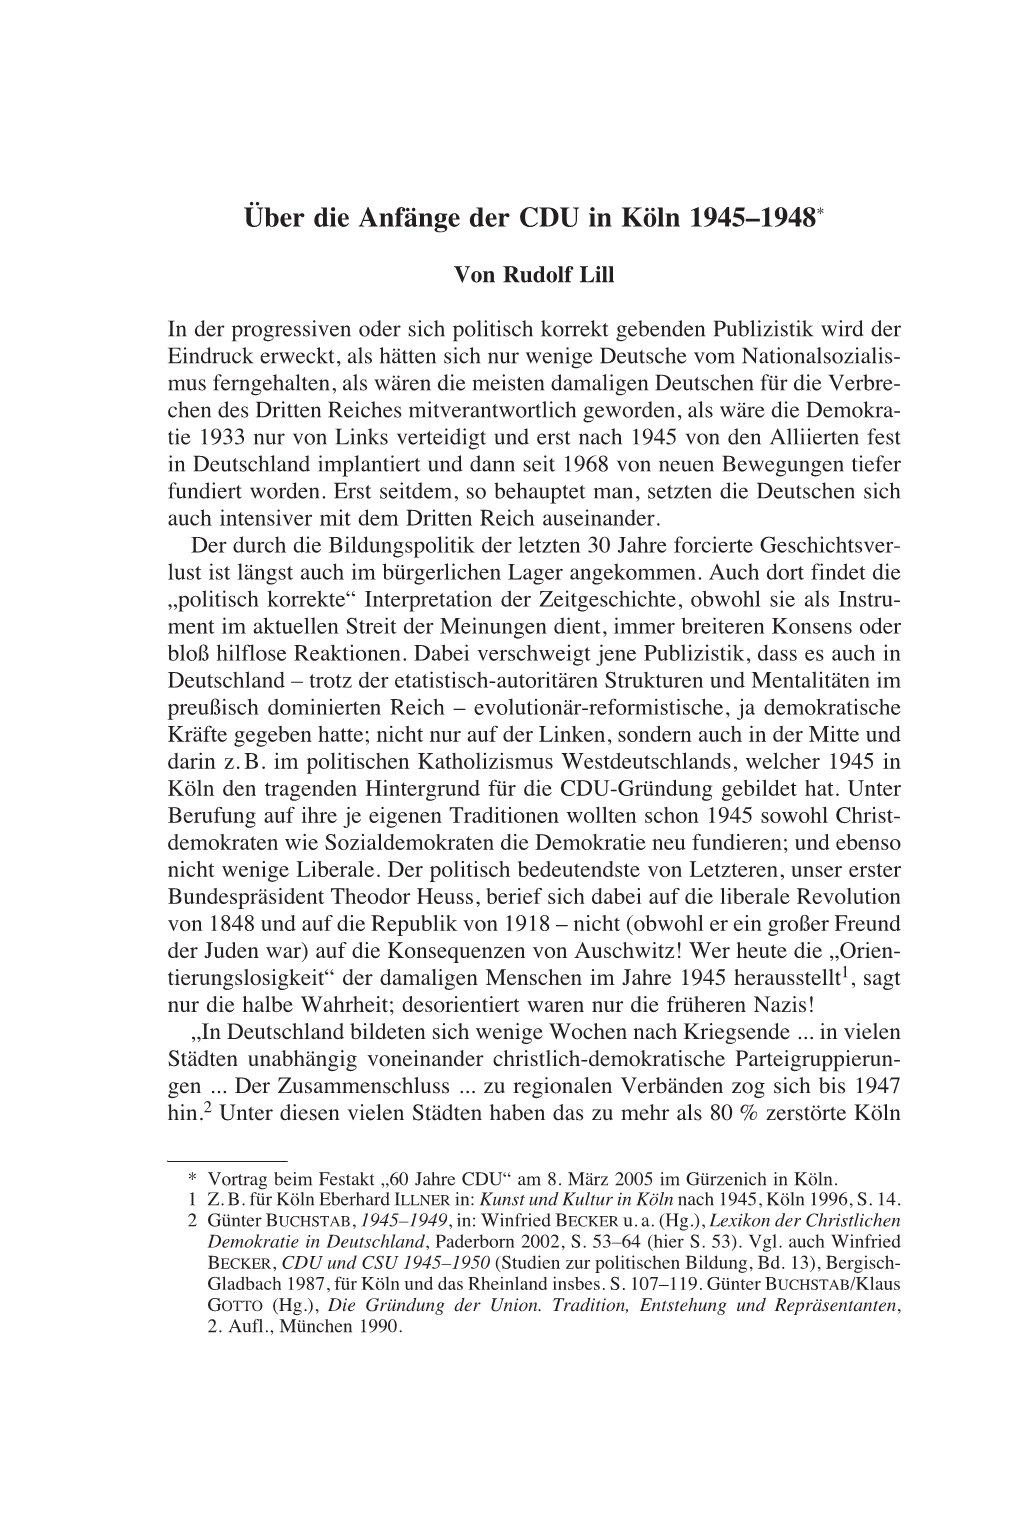 Historisch Politische Mitteilungen, 12. Jahrgang 2005